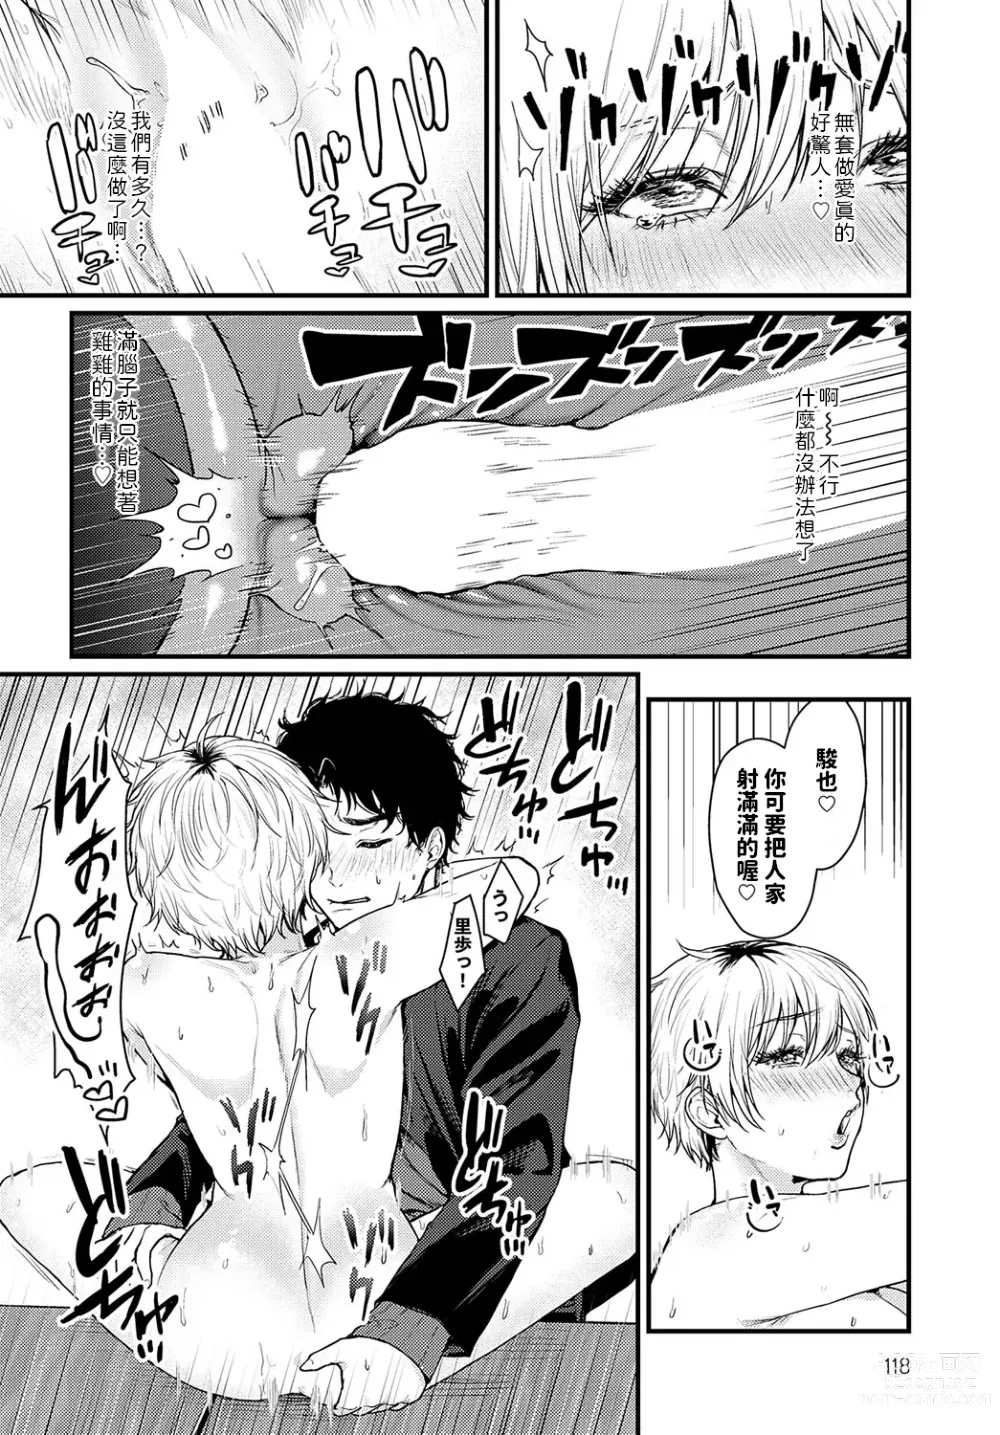 Page 24 of manga Misshitsu Swimsuit